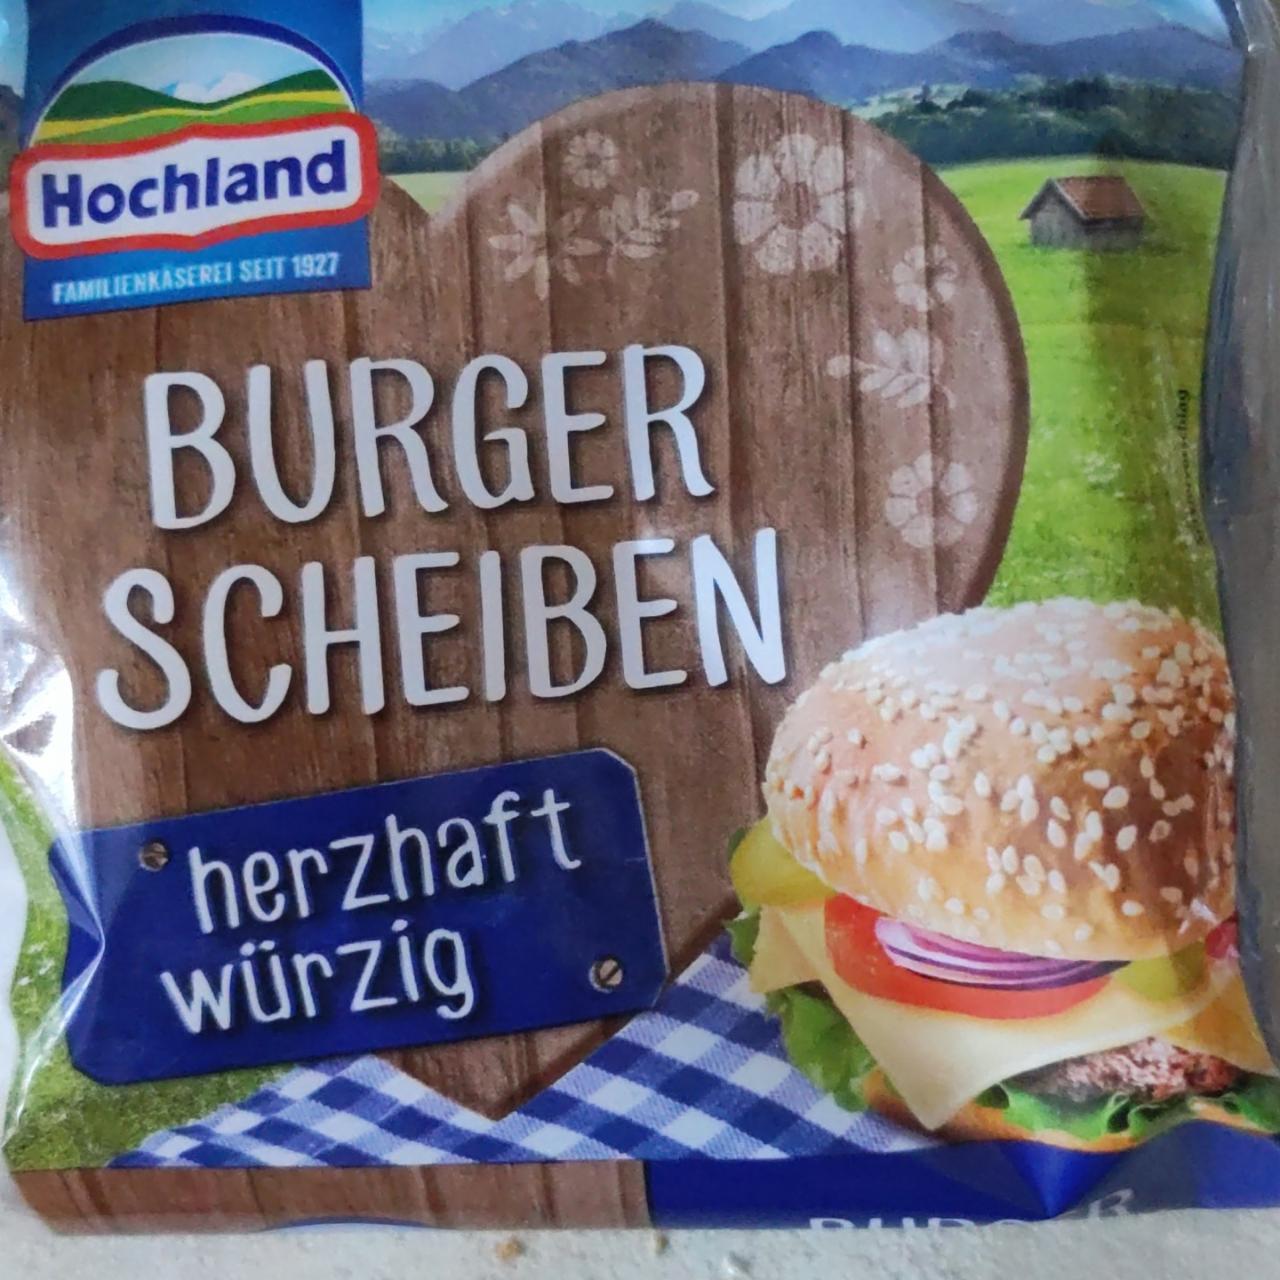 Zdjęcia - Burger Scheiben herzhaft würzig Hochland